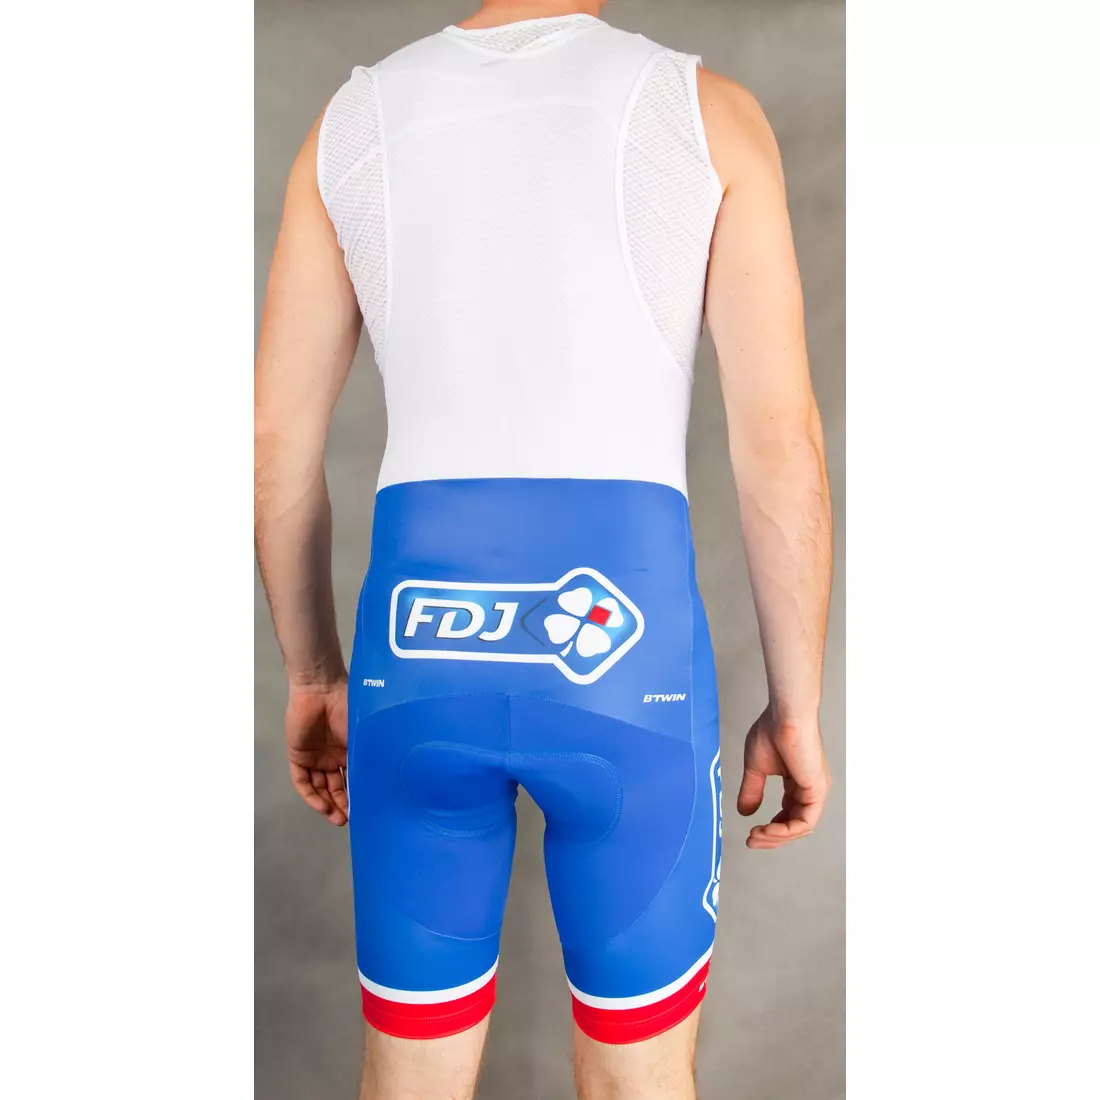 TEAM FDJ 2016 cycling shorts